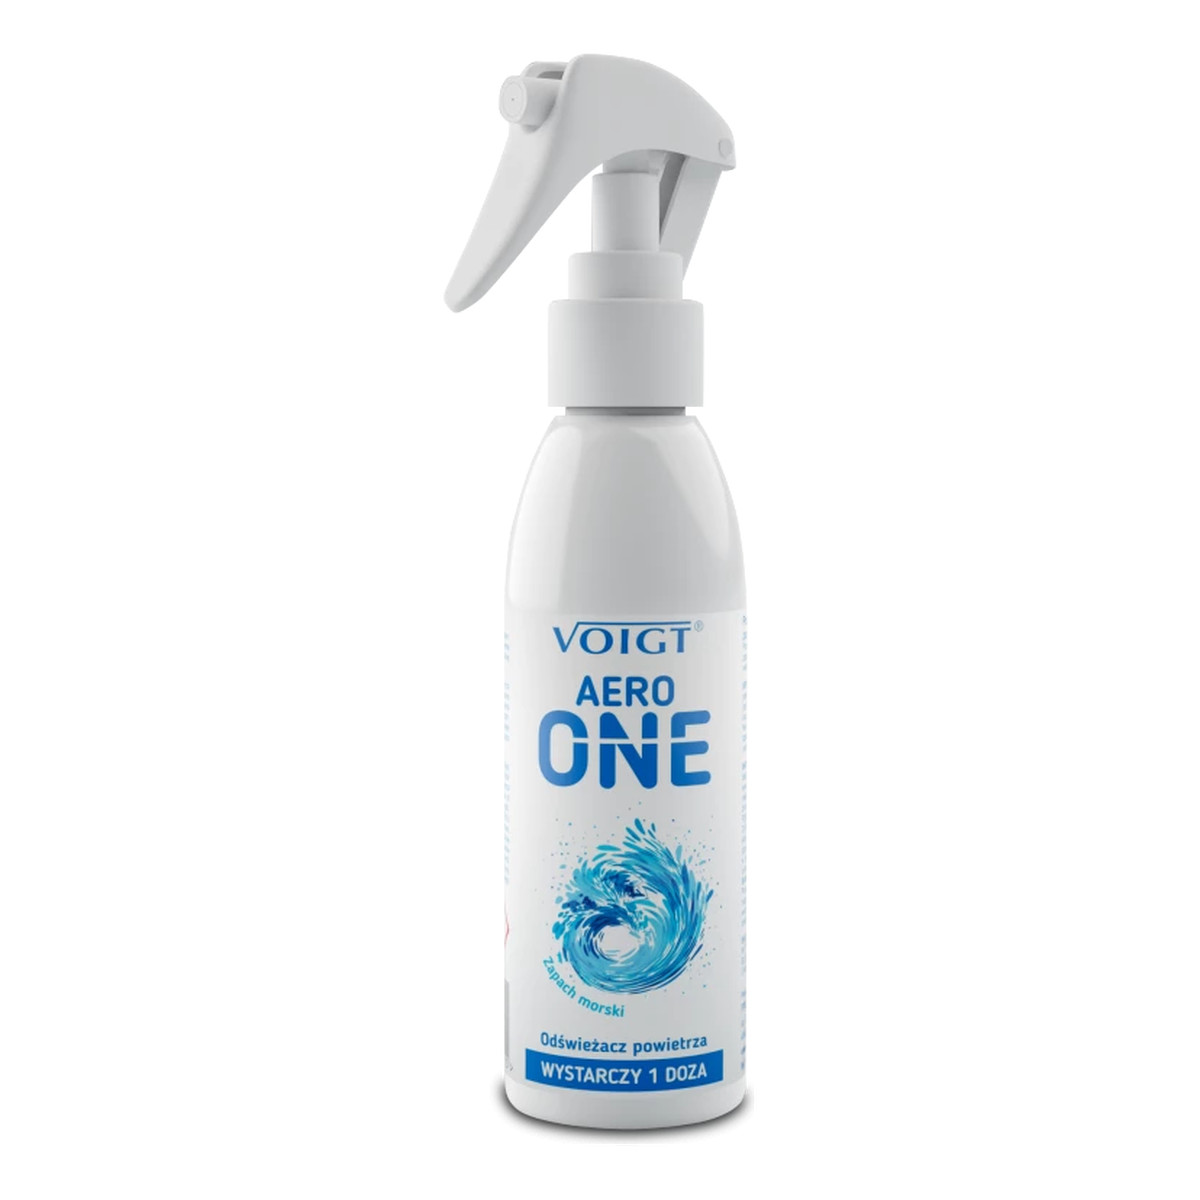 Voigt Aero One Odświeżacz powietrza- zapach morski 150ml